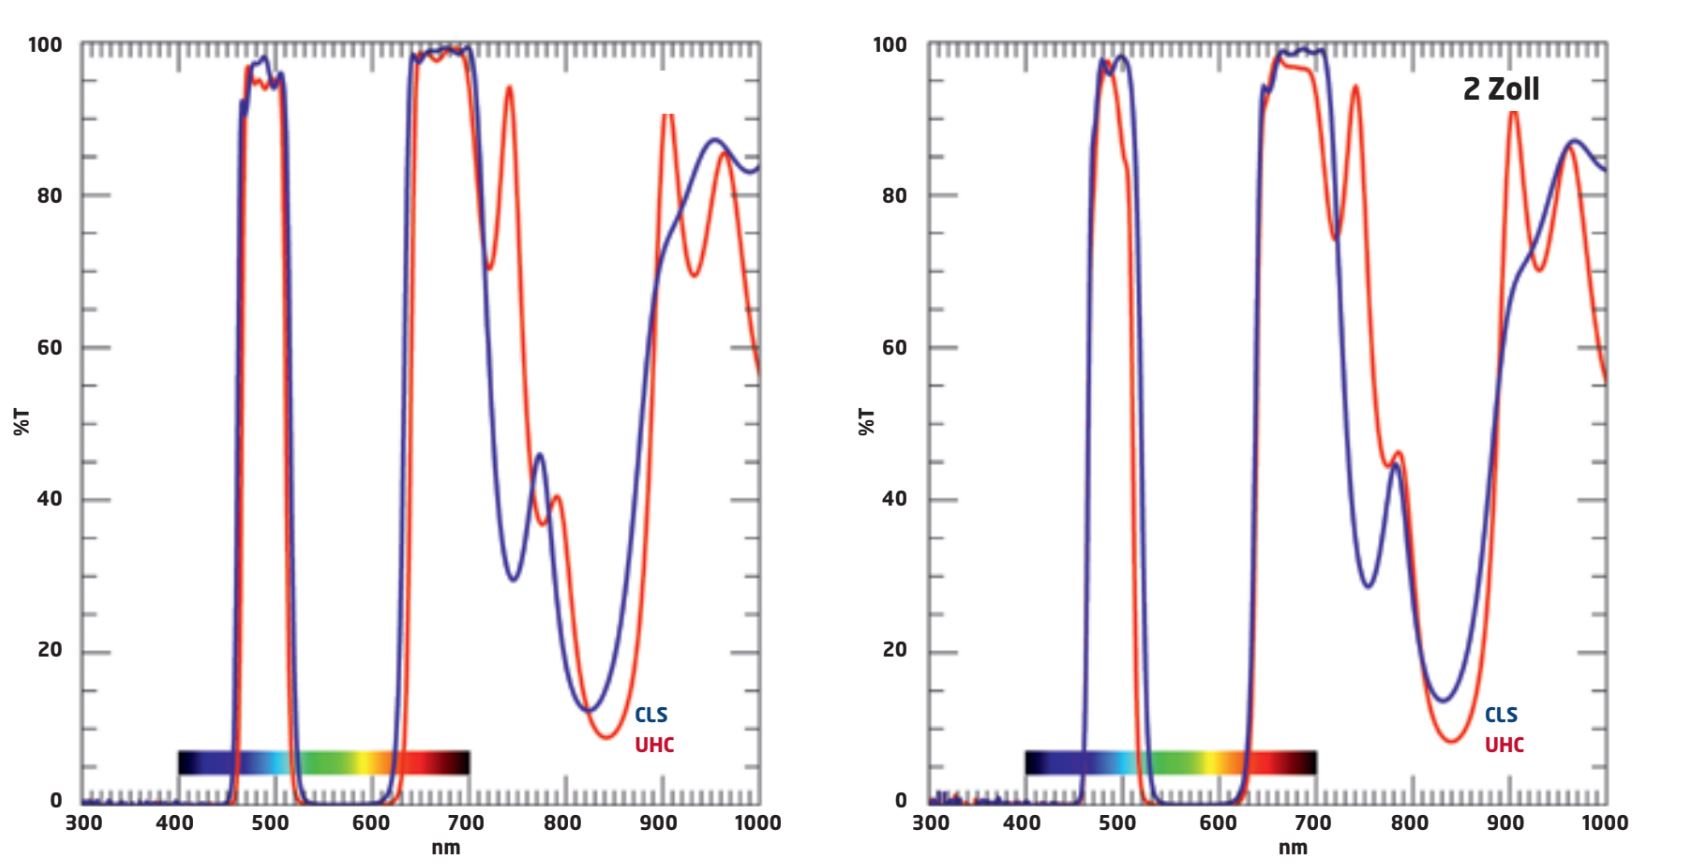 Wykresy transmisji filtrów UHC i CLS.